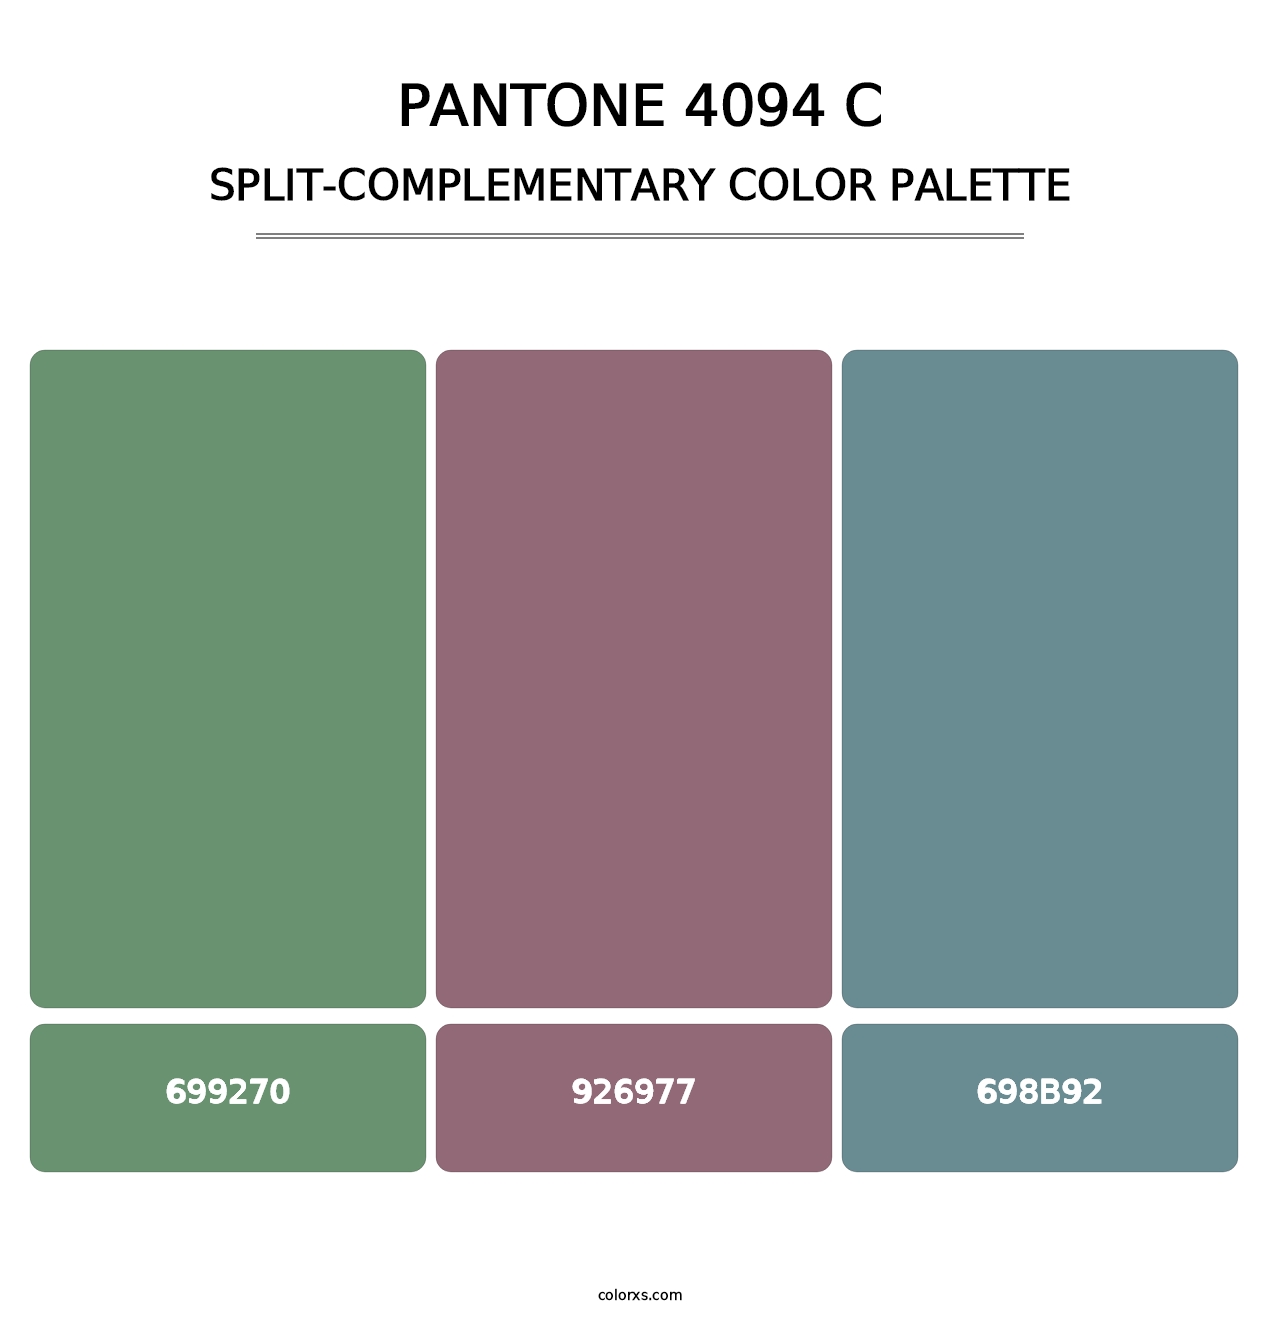 PANTONE 4094 C - Split-Complementary Color Palette